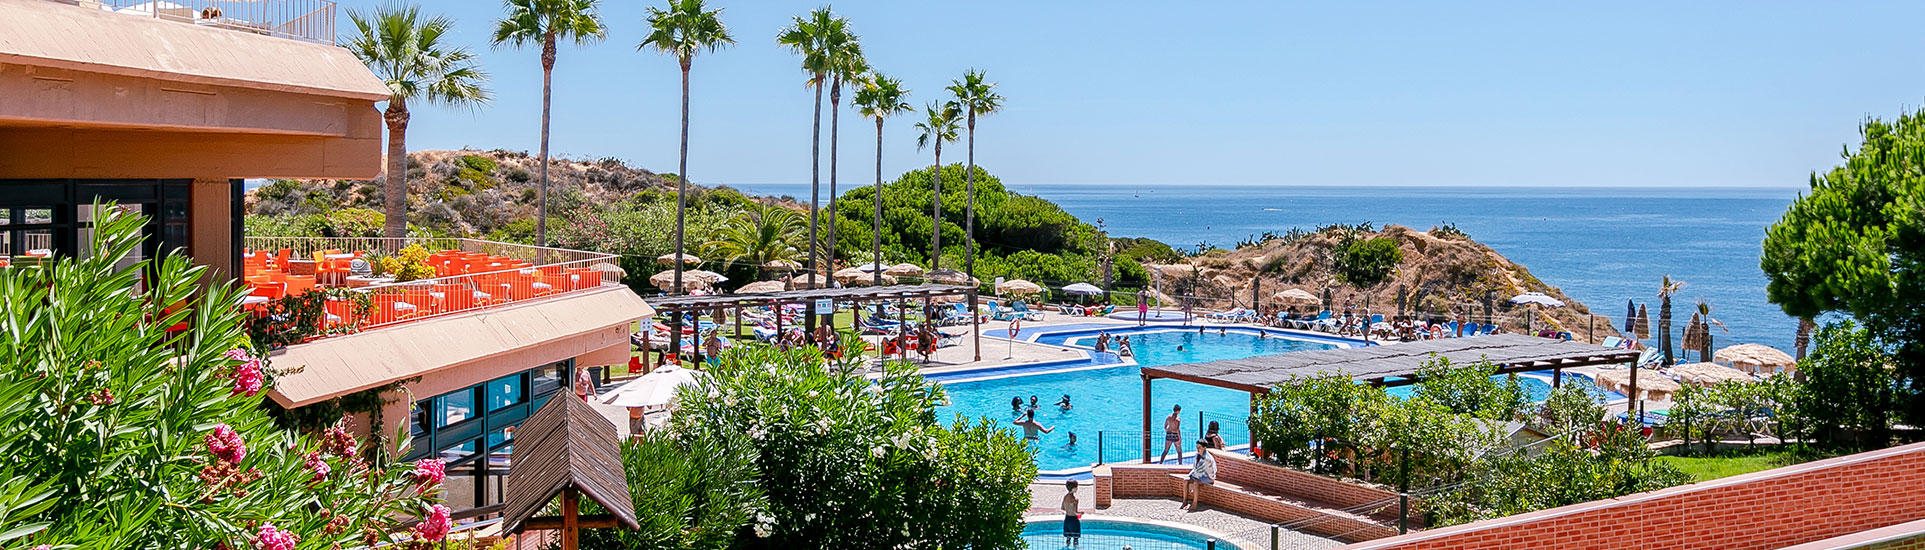 tourhub | Just Go Holidays | Auramar Hotel, Algarve, Portugal – All Inclusive – 14 nights 